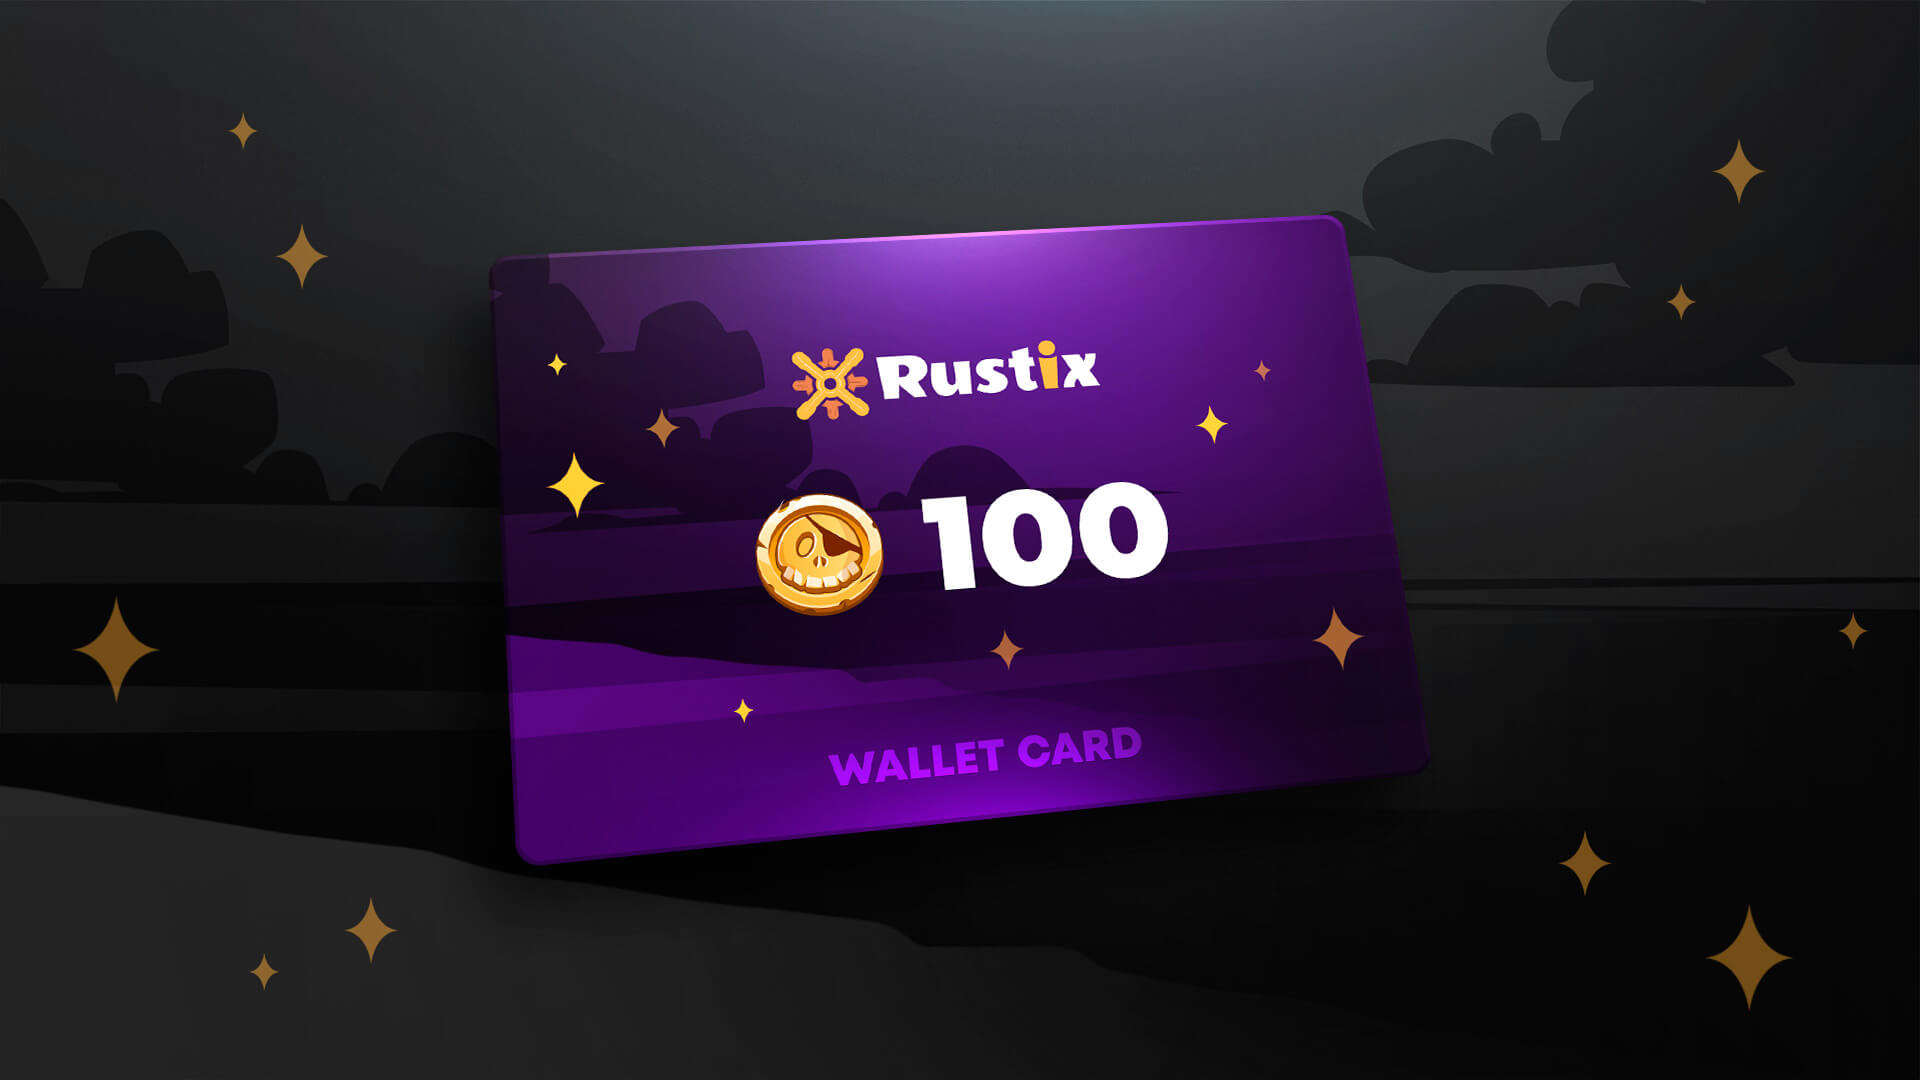 Rustix.io 100 USD Wallet Card Code 113 usd